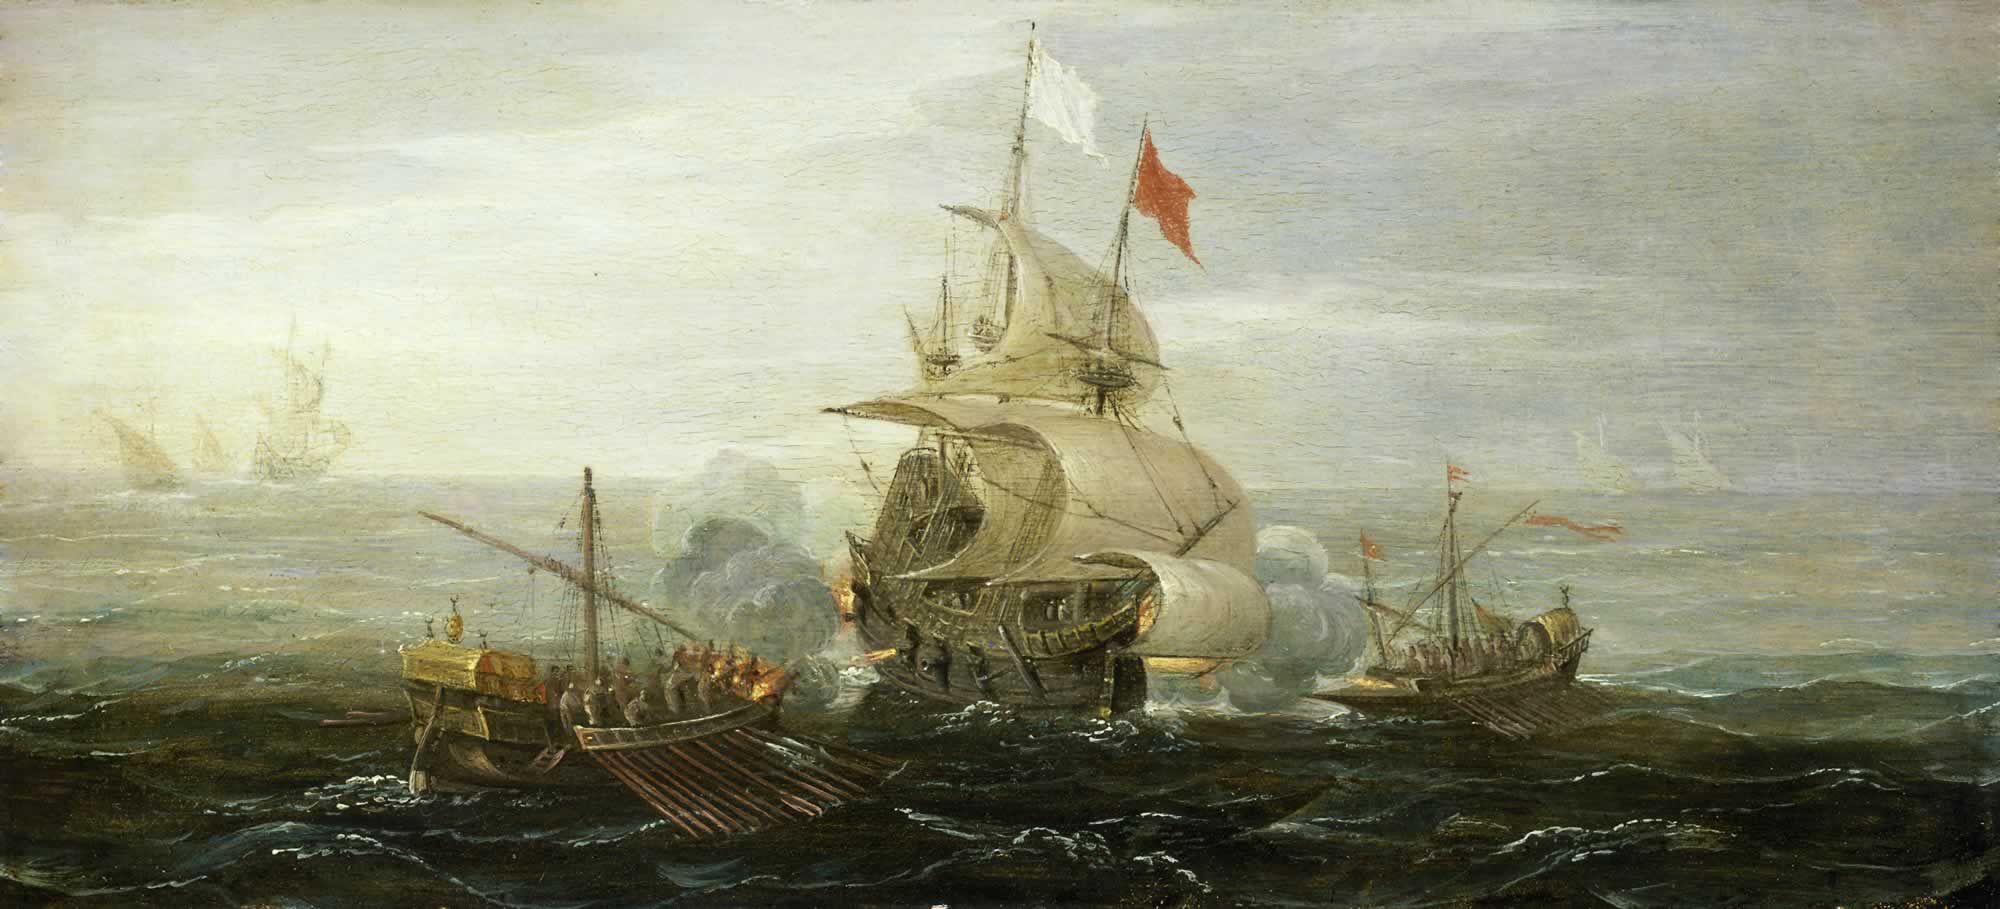 Ranskalaislaiva taistelemassa barbareskilaivoja vastaan